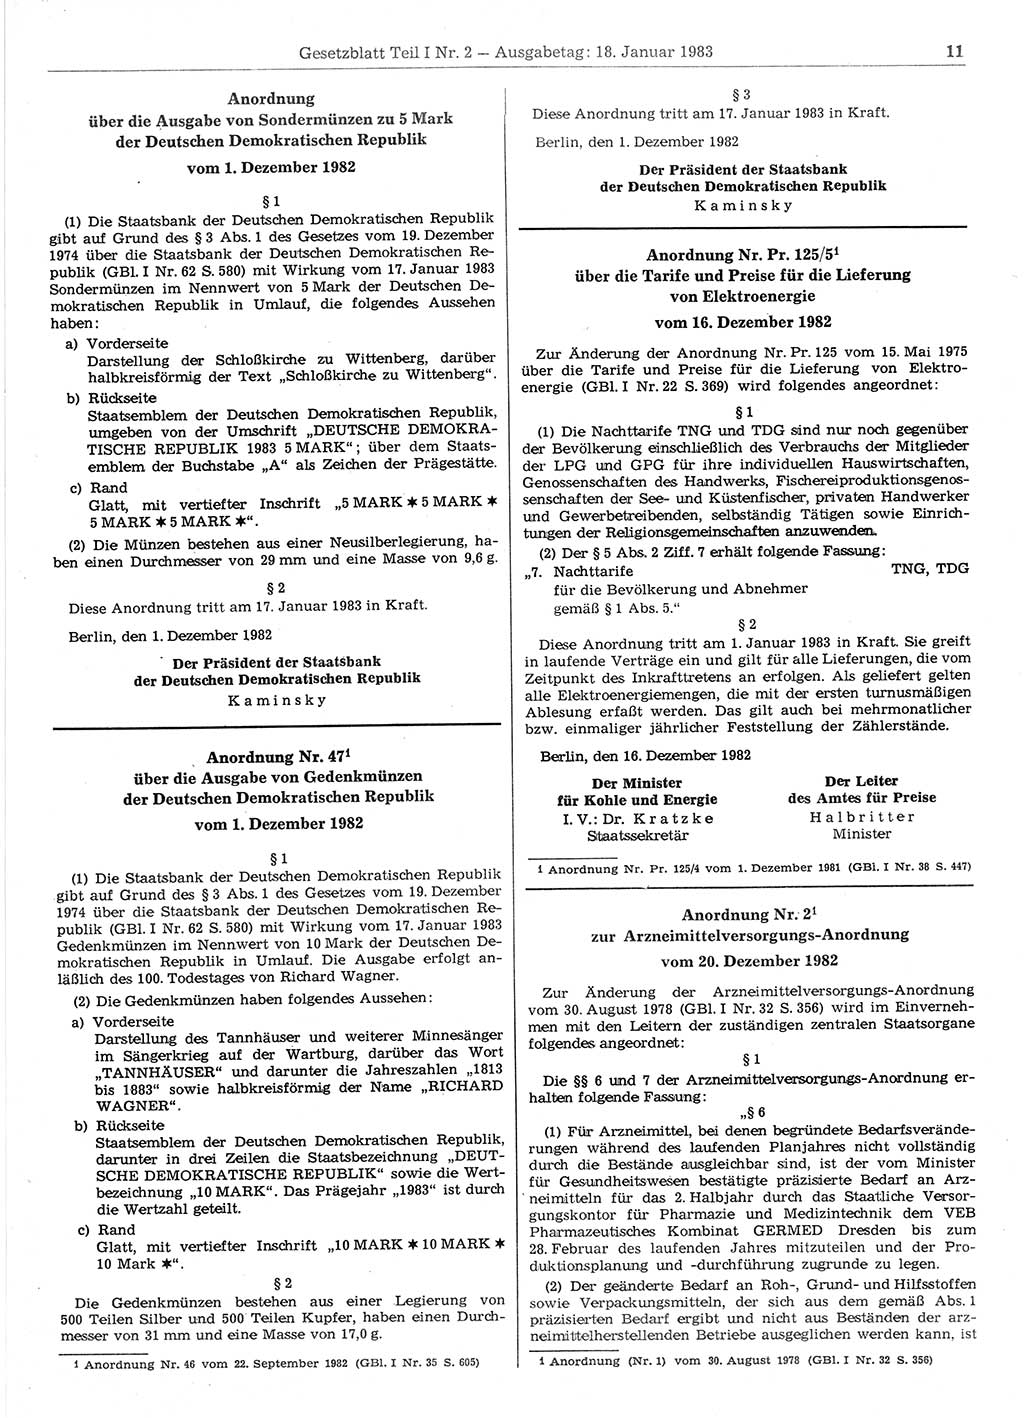 Gesetzblatt (GBl.) der Deutschen Demokratischen Republik (DDR) Teil Ⅰ 1983, Seite 11 (GBl. DDR Ⅰ 1983, S. 11)